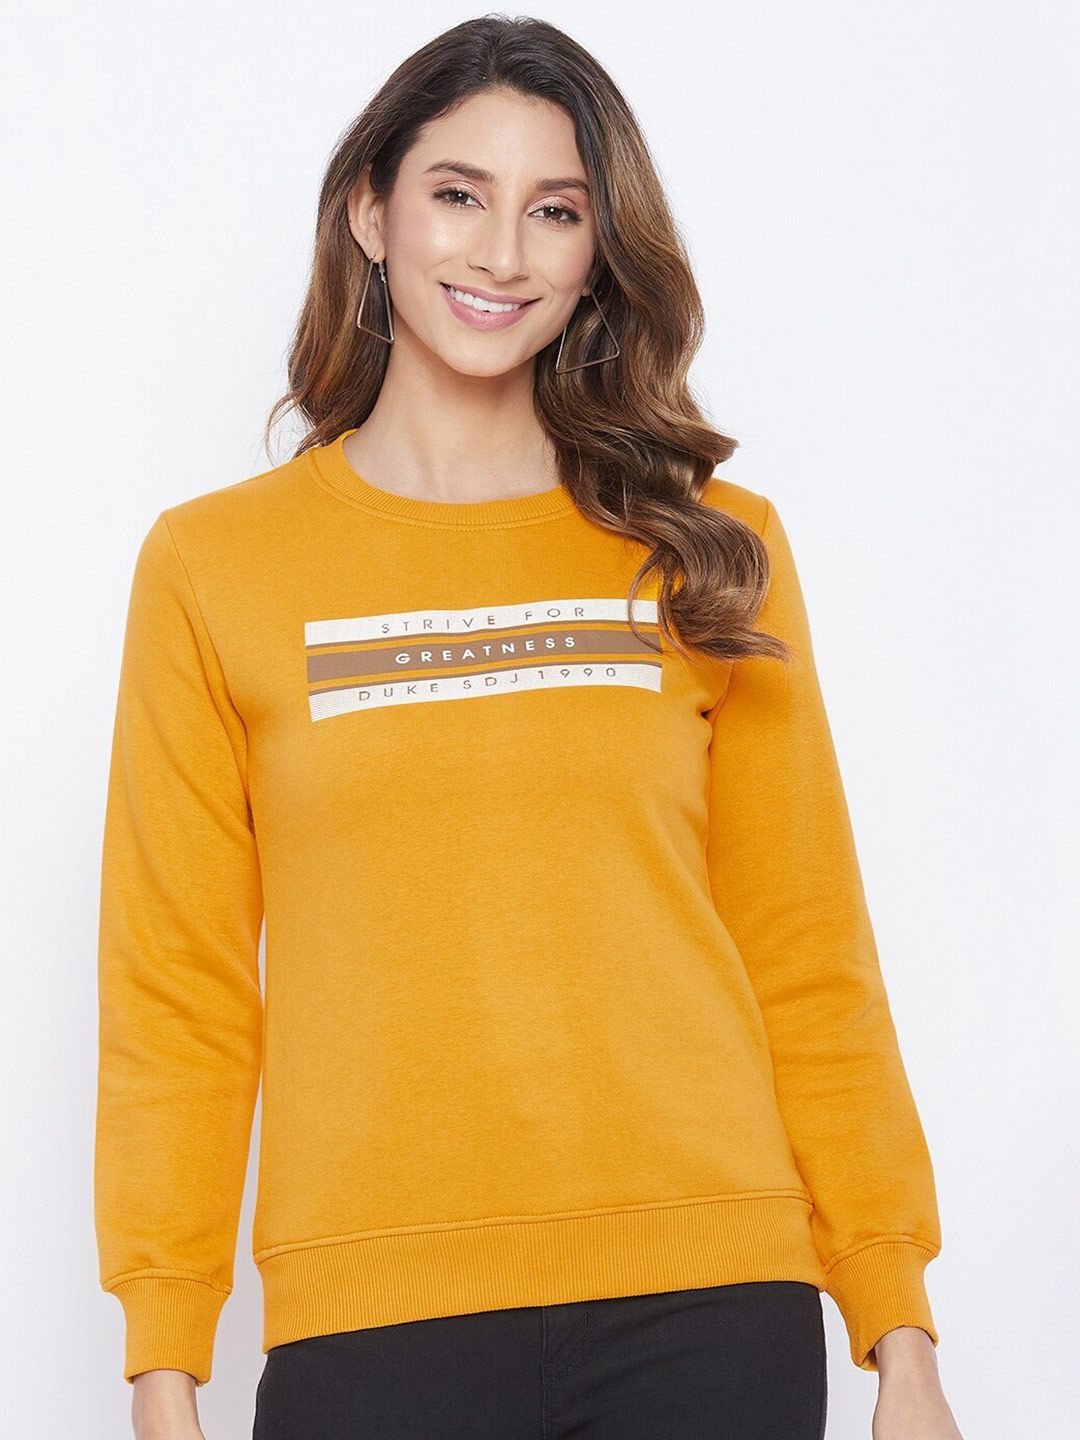 Duke Women Yellow Printed Sweatshirt Price in India